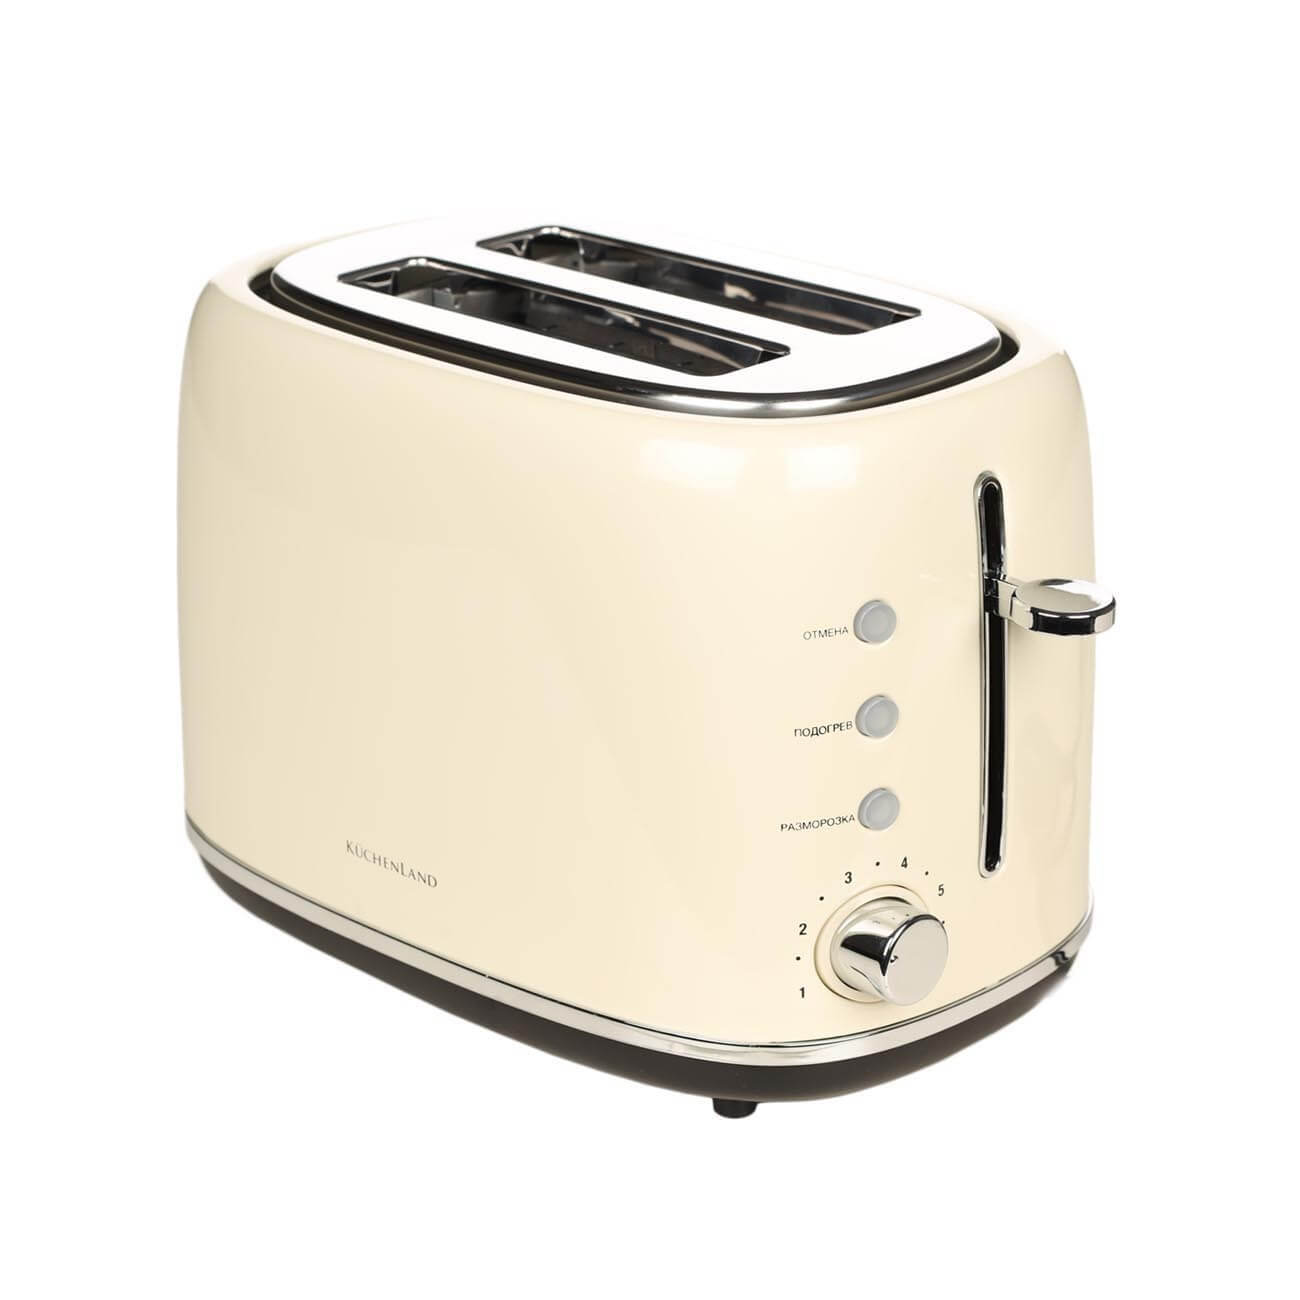 Тостер электрический, 730-870 Вт, 6 режимов, сталь/пластик, бежевый, Vintage kitchen смеситель golden fox kitchen pro для кухни с высоким изливом бежевый